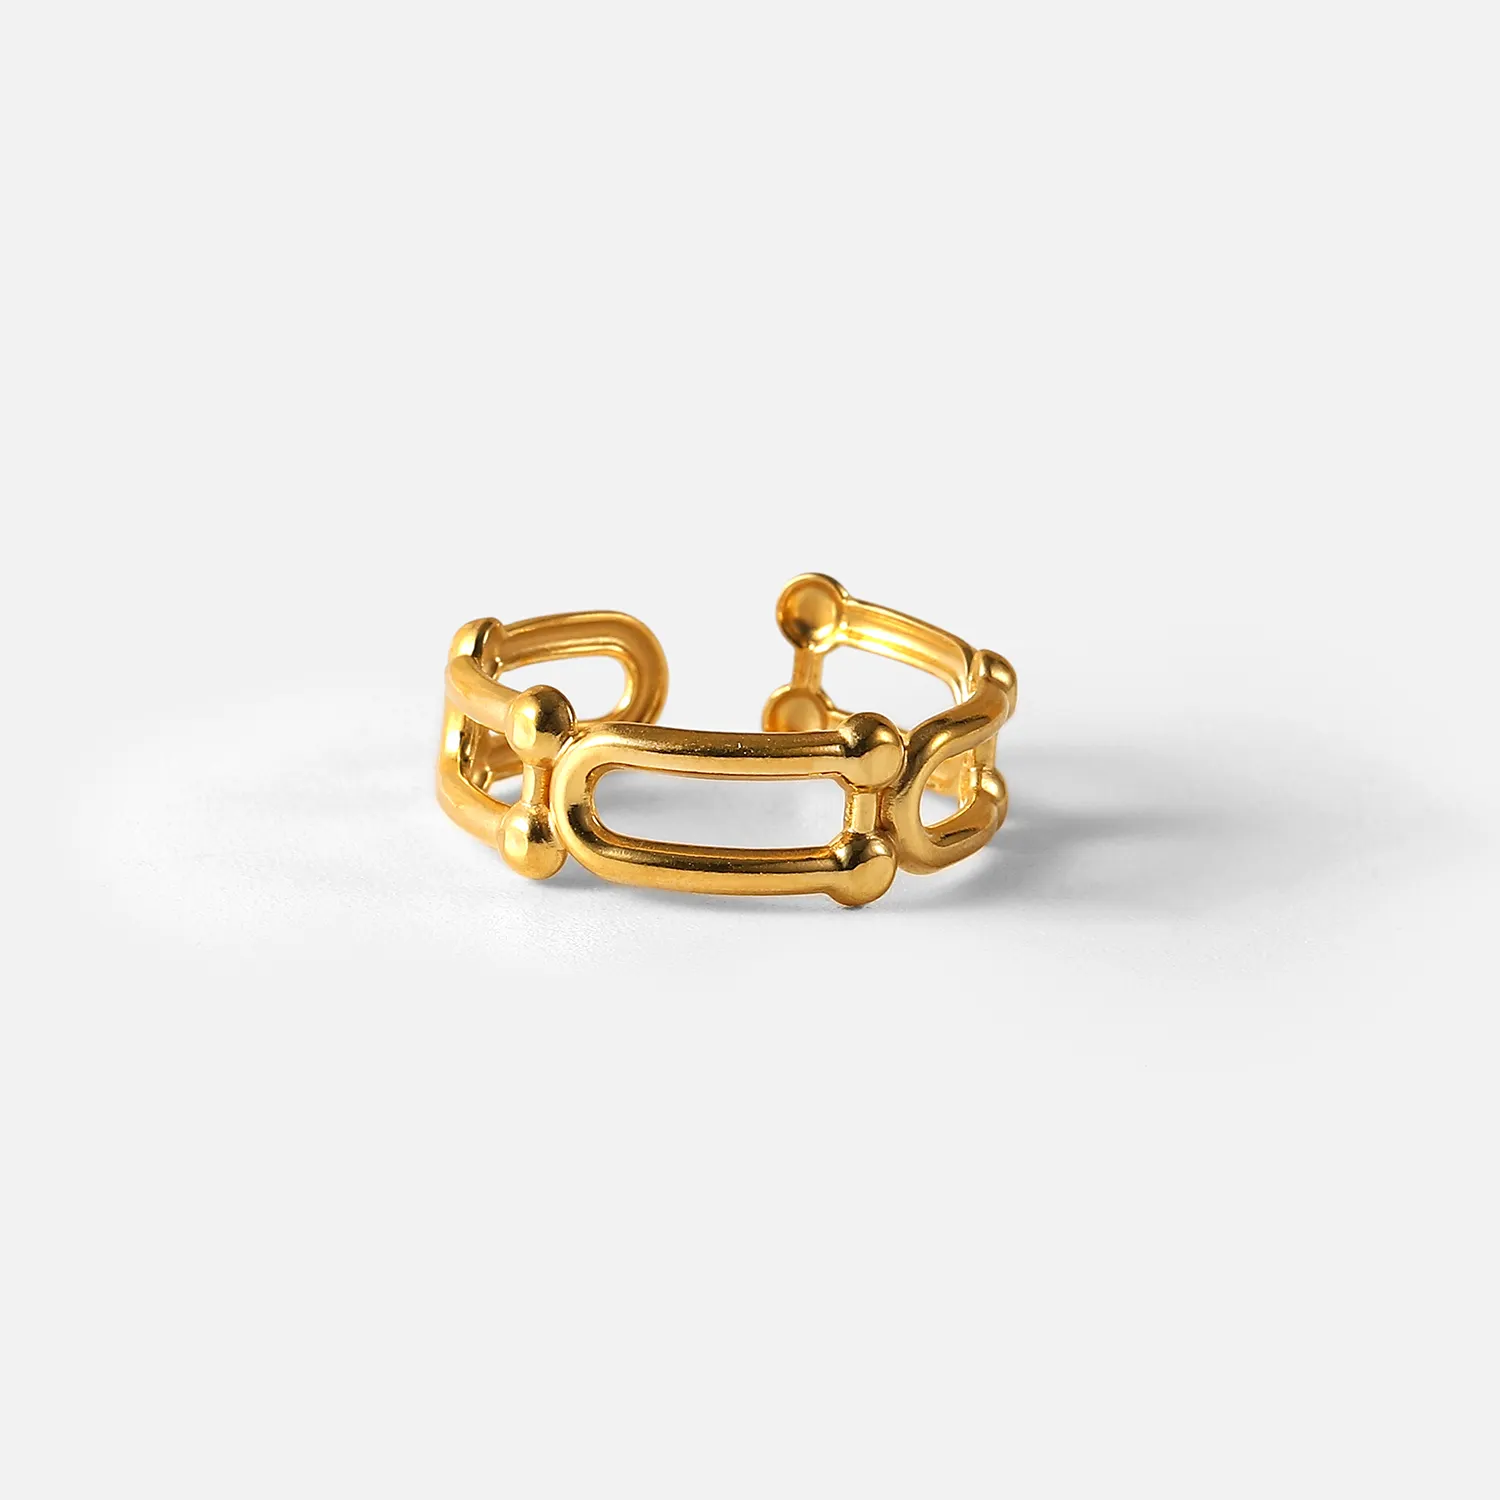 Индивидуальное Золотое кольцо из нержавеющей стали U-образная цепочка с пряжкой в форме подковы, открытое регулируемое массивное кольцо